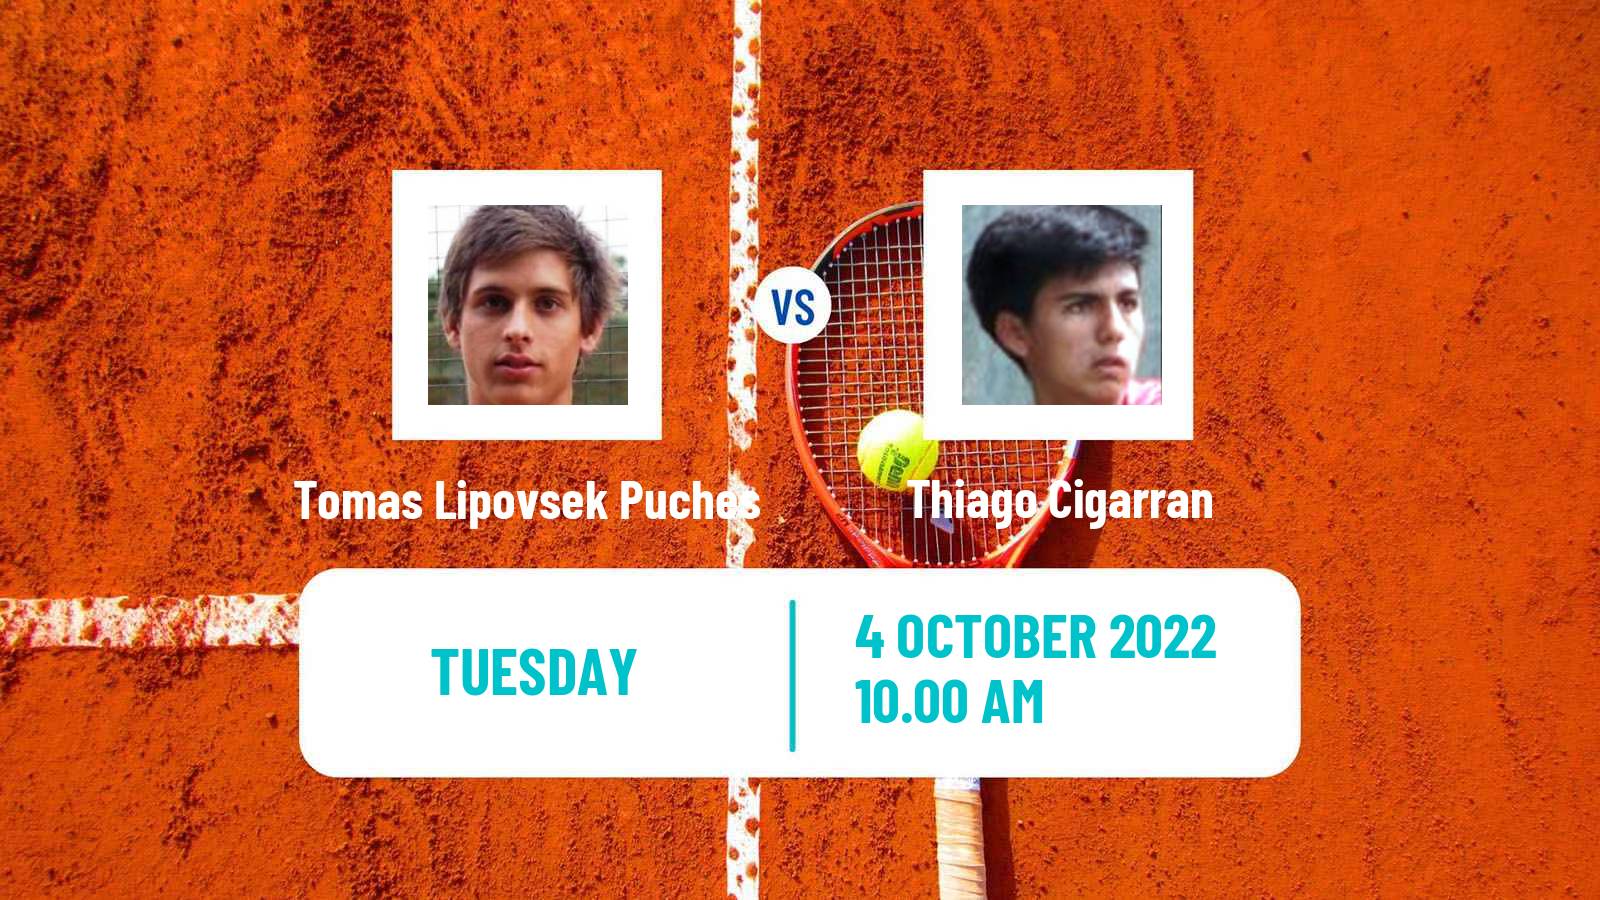 Tennis ITF Tournaments Tomas Lipovsek Puches - Thiago Cigarran